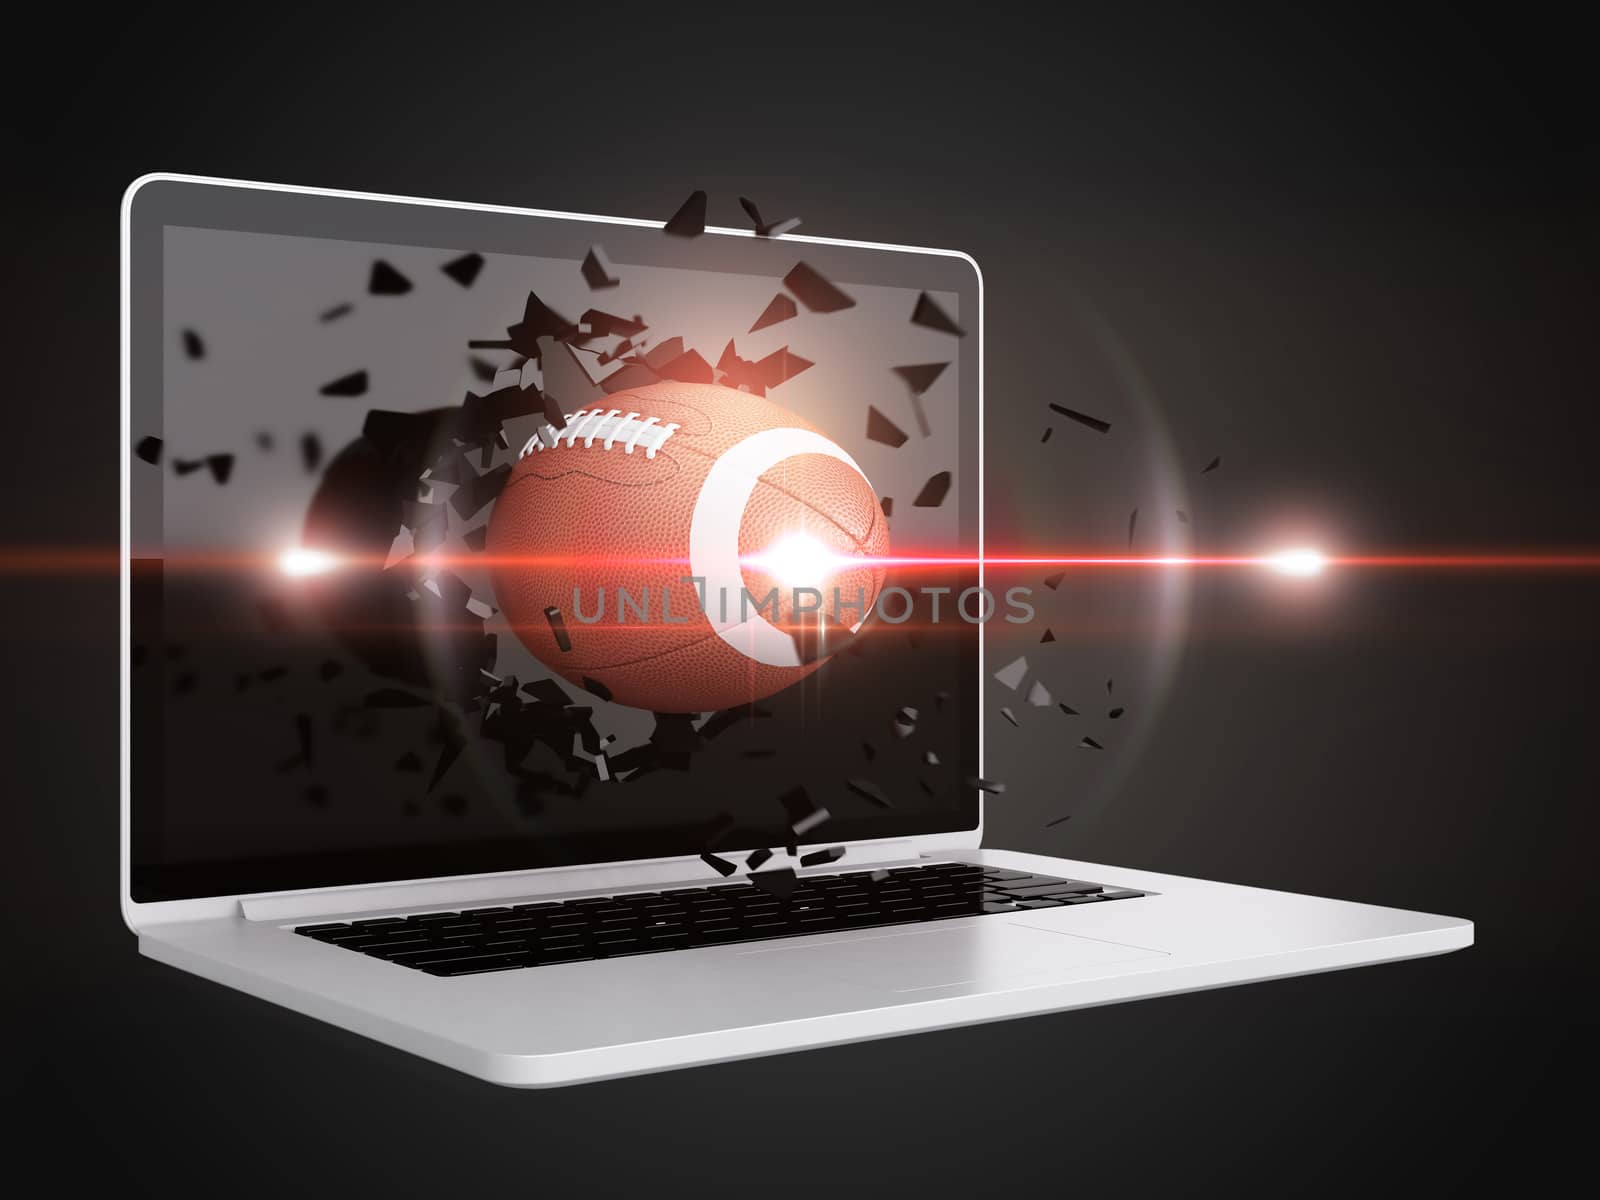 football destroy laptop, technology background, sport background